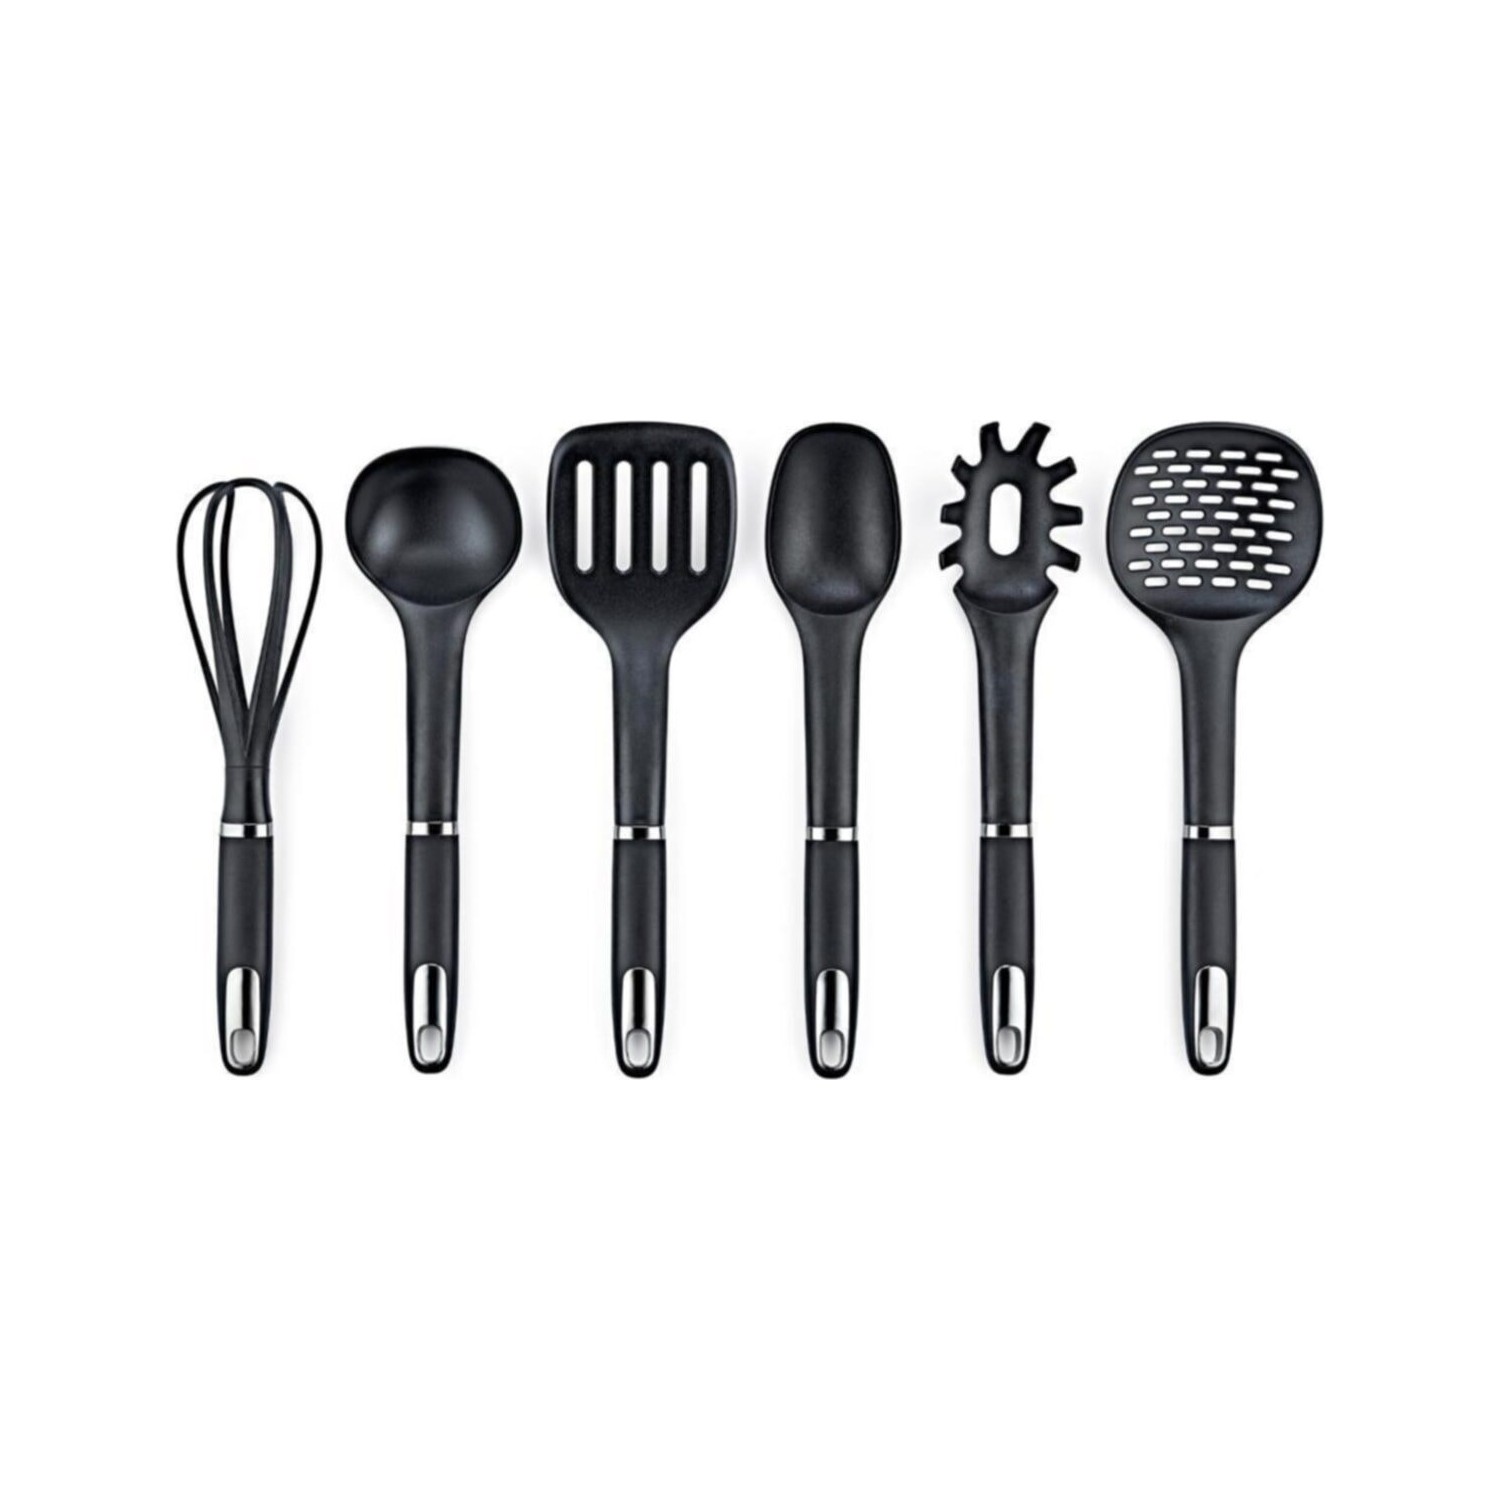 Набор кухонных принадлежностей Vipahmet из 6 предметов, черный набор кухонных принадлежностей vantage 14 предметов черный